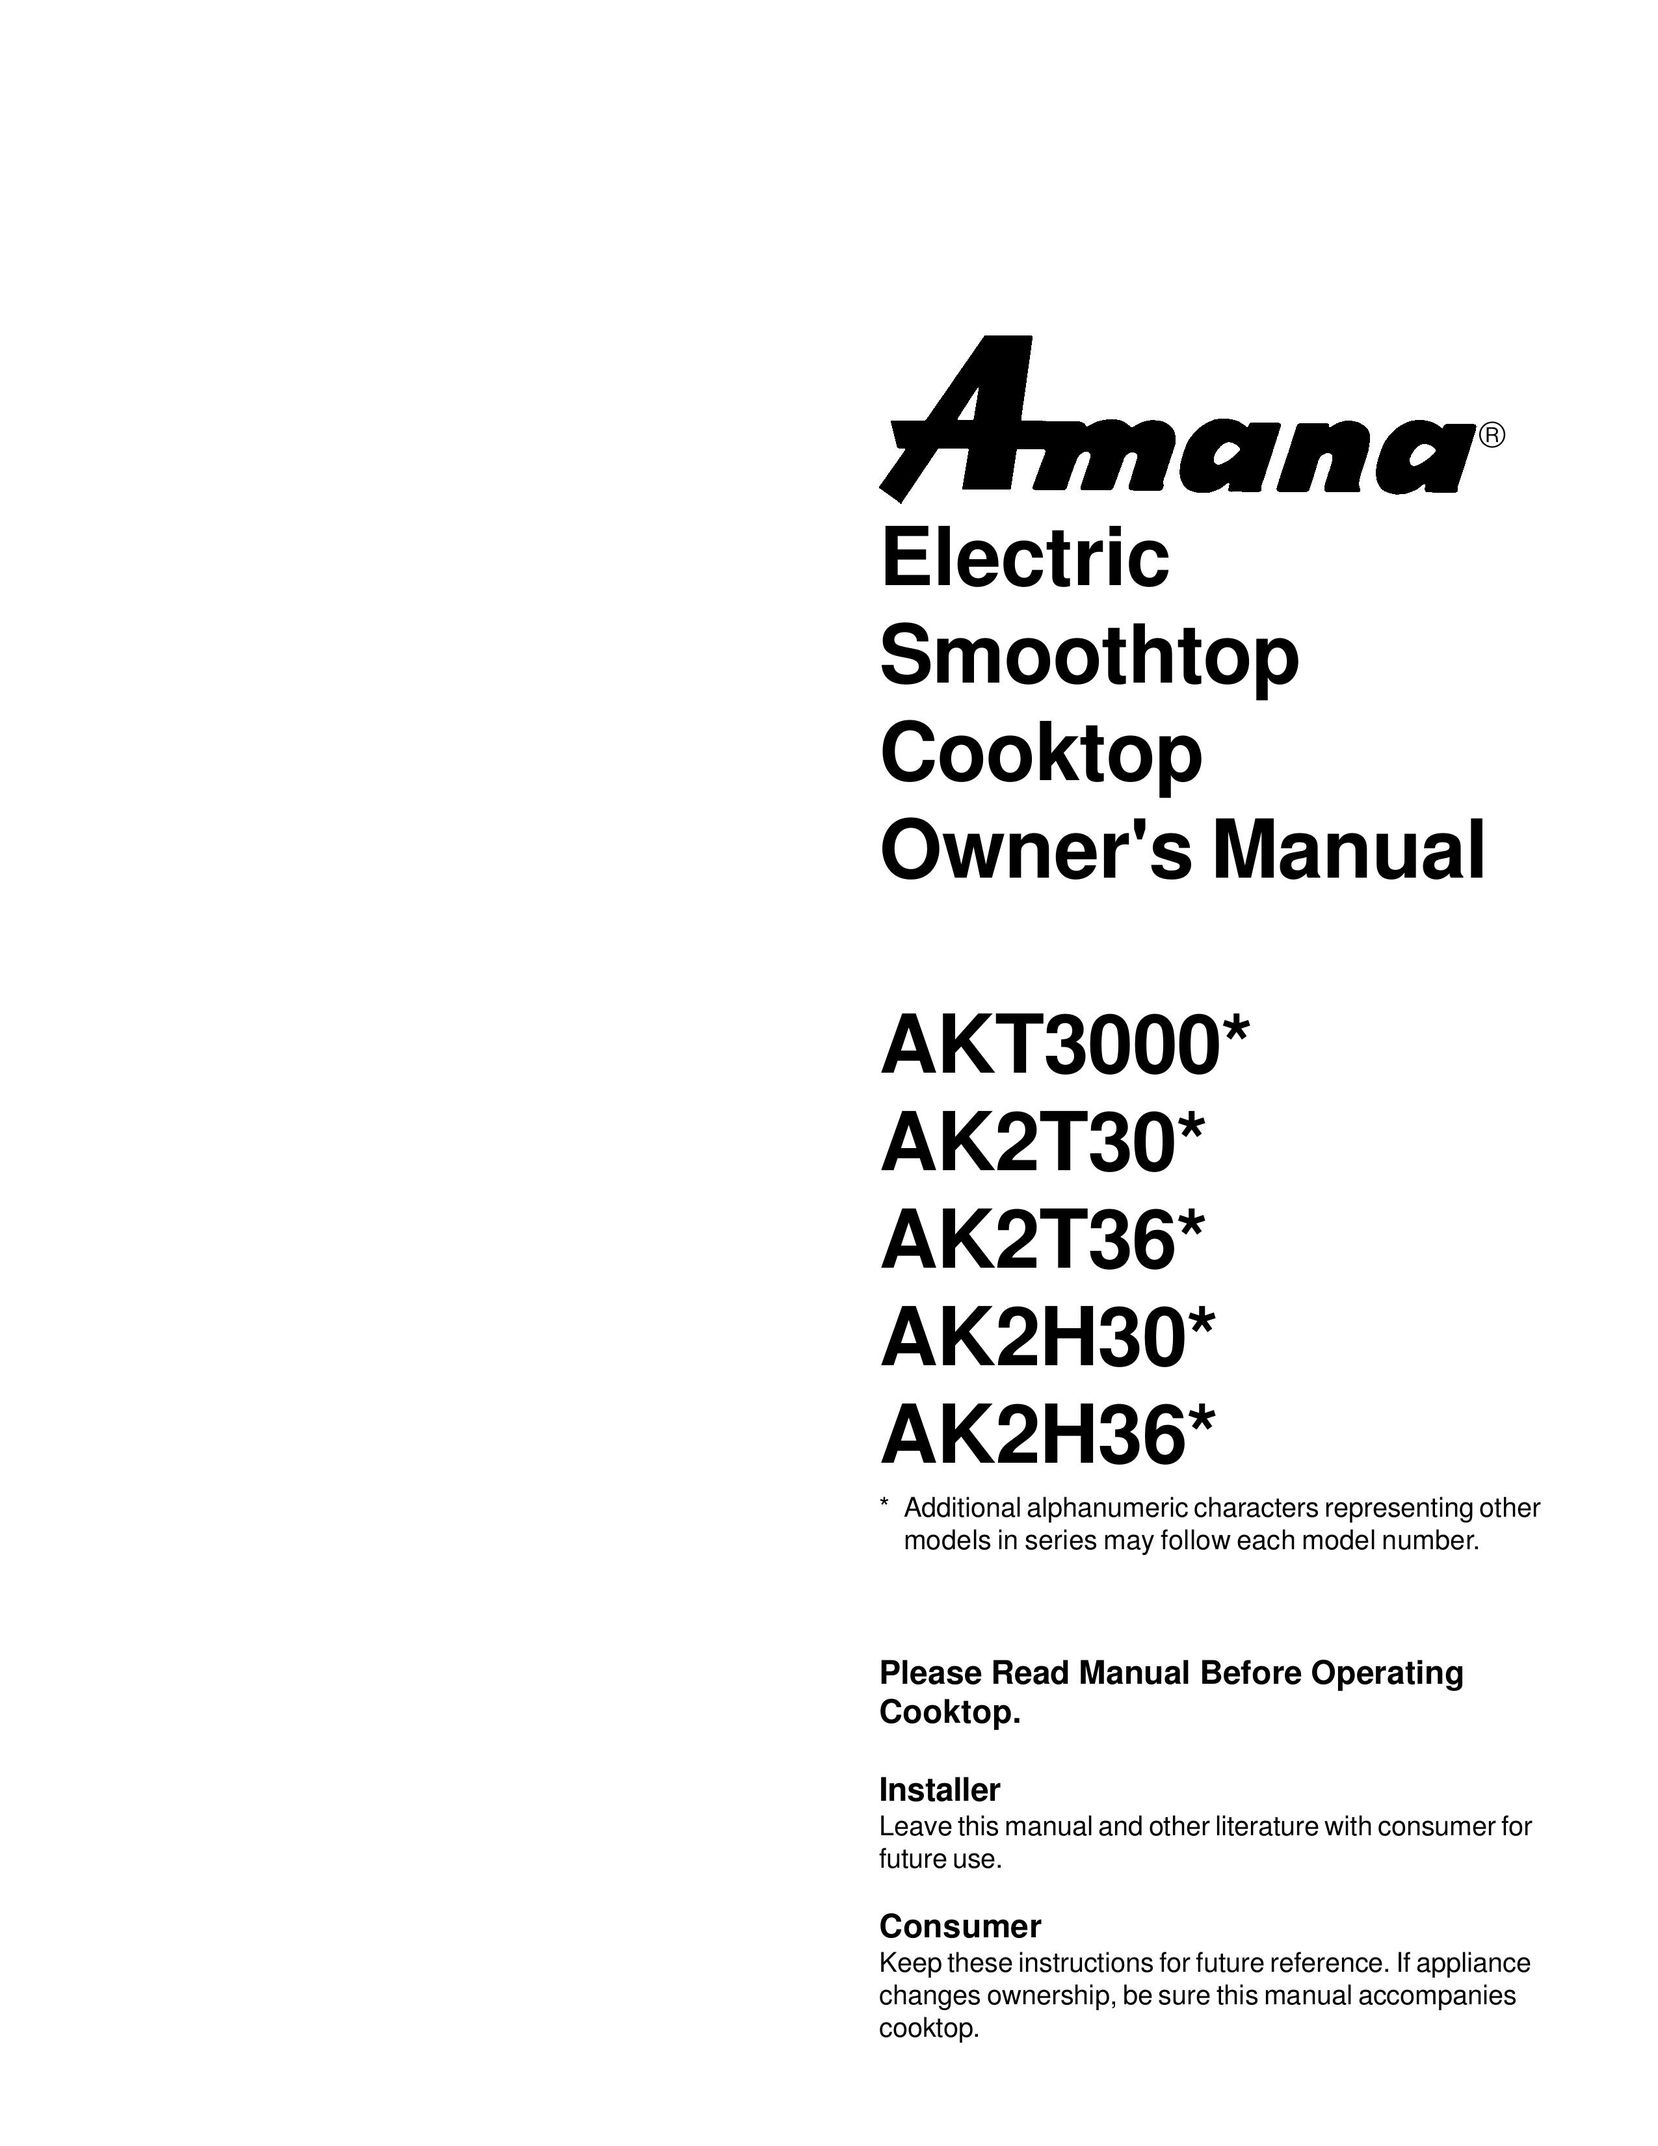 Amana AK2T30* Cooktop User Manual